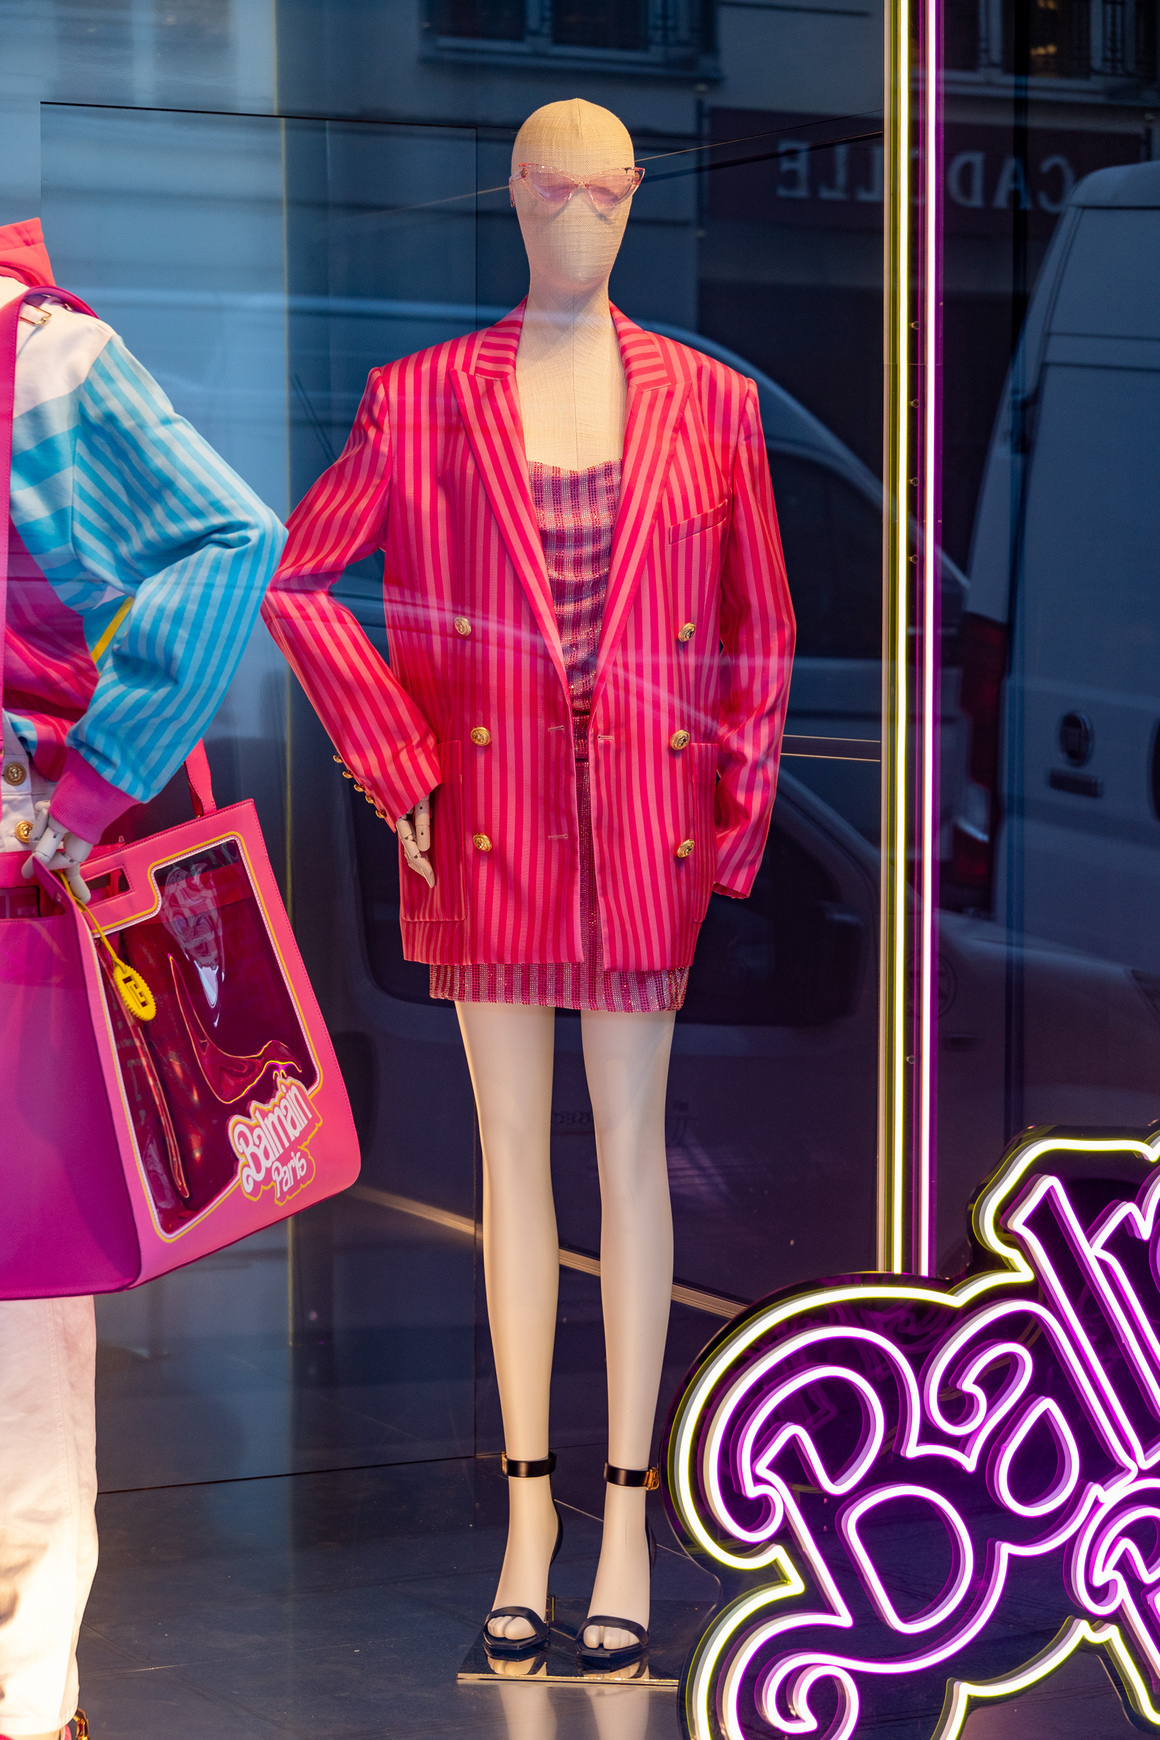 <p>От тениски до вечерни рокли, колекцията Balmain x Barbie е изложена сред декори от типично парижко имение. Втората зона на бутика, която напомня на  градината на Palais-Royal със своята зеленина - ще бъде използвана като пространство за представяне на модели и DJ сетове на живо. </p>

<p>„<strong>Това е Париж, в който определено Барби би се разхождала</strong>“, коментира Оливие Рустин, творчески директор на Balmain от 2011 г.<br>
 </p>
